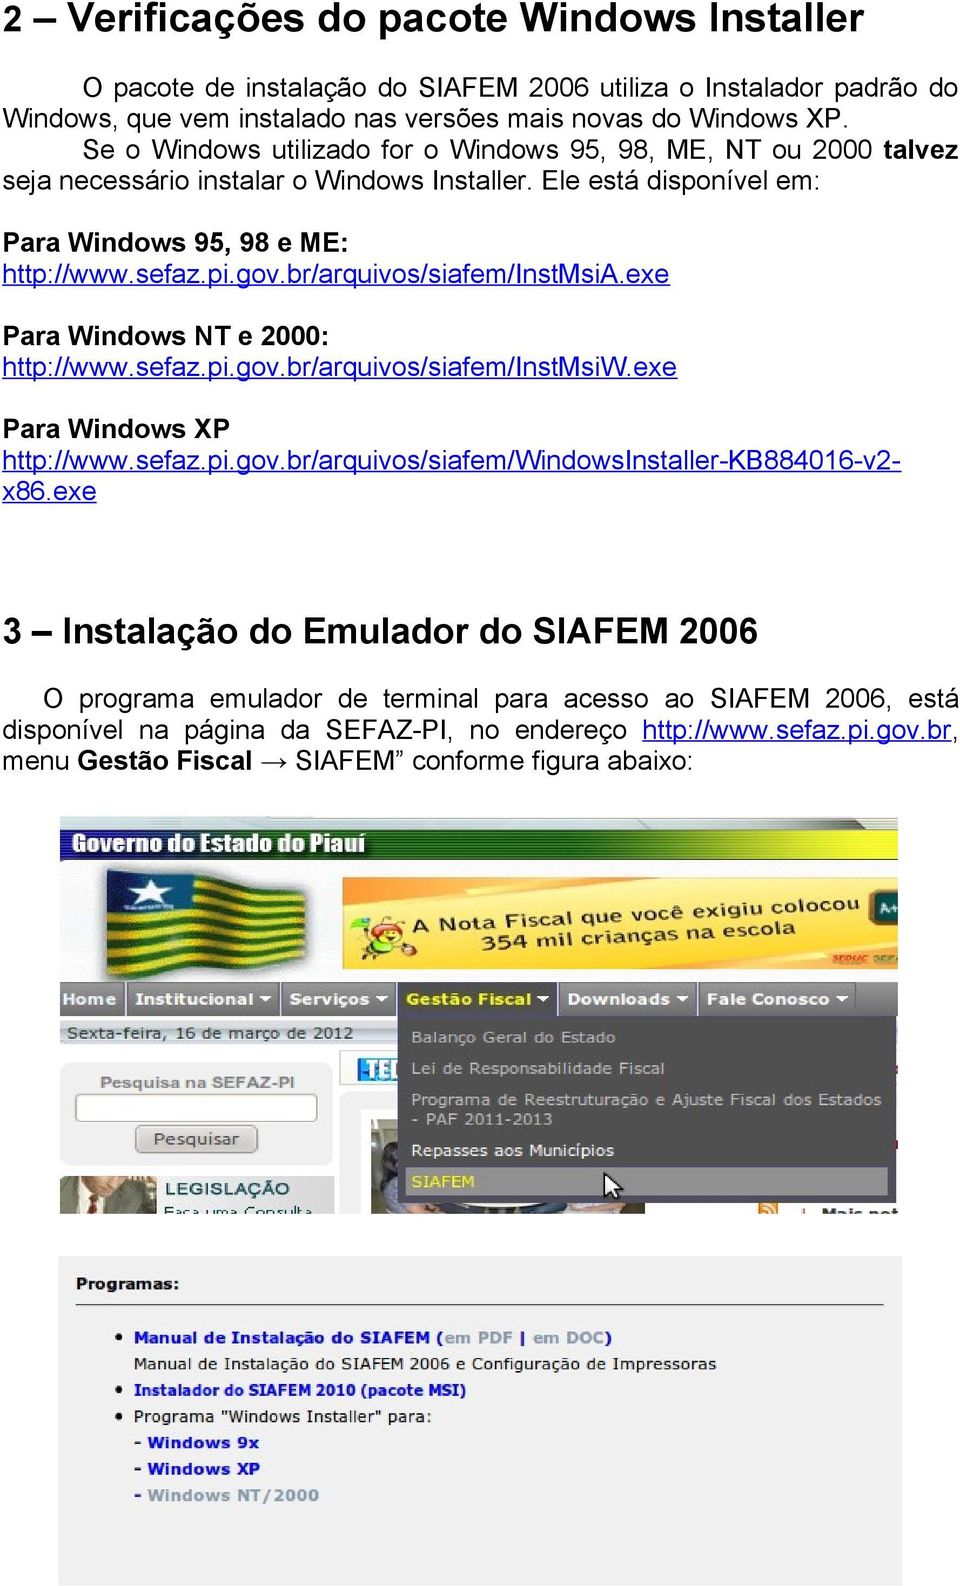 br/arquivos/siafem/instmsia.exe Para Windows NT e 2000: http://www.sefaz.pi.gov.br/arquivos/siafem/instmsiw.exe Para Windows XP http://www.sefaz.pi.gov.br/arquivos/siafem/windowsinstaller-kb884016-v2- x86.